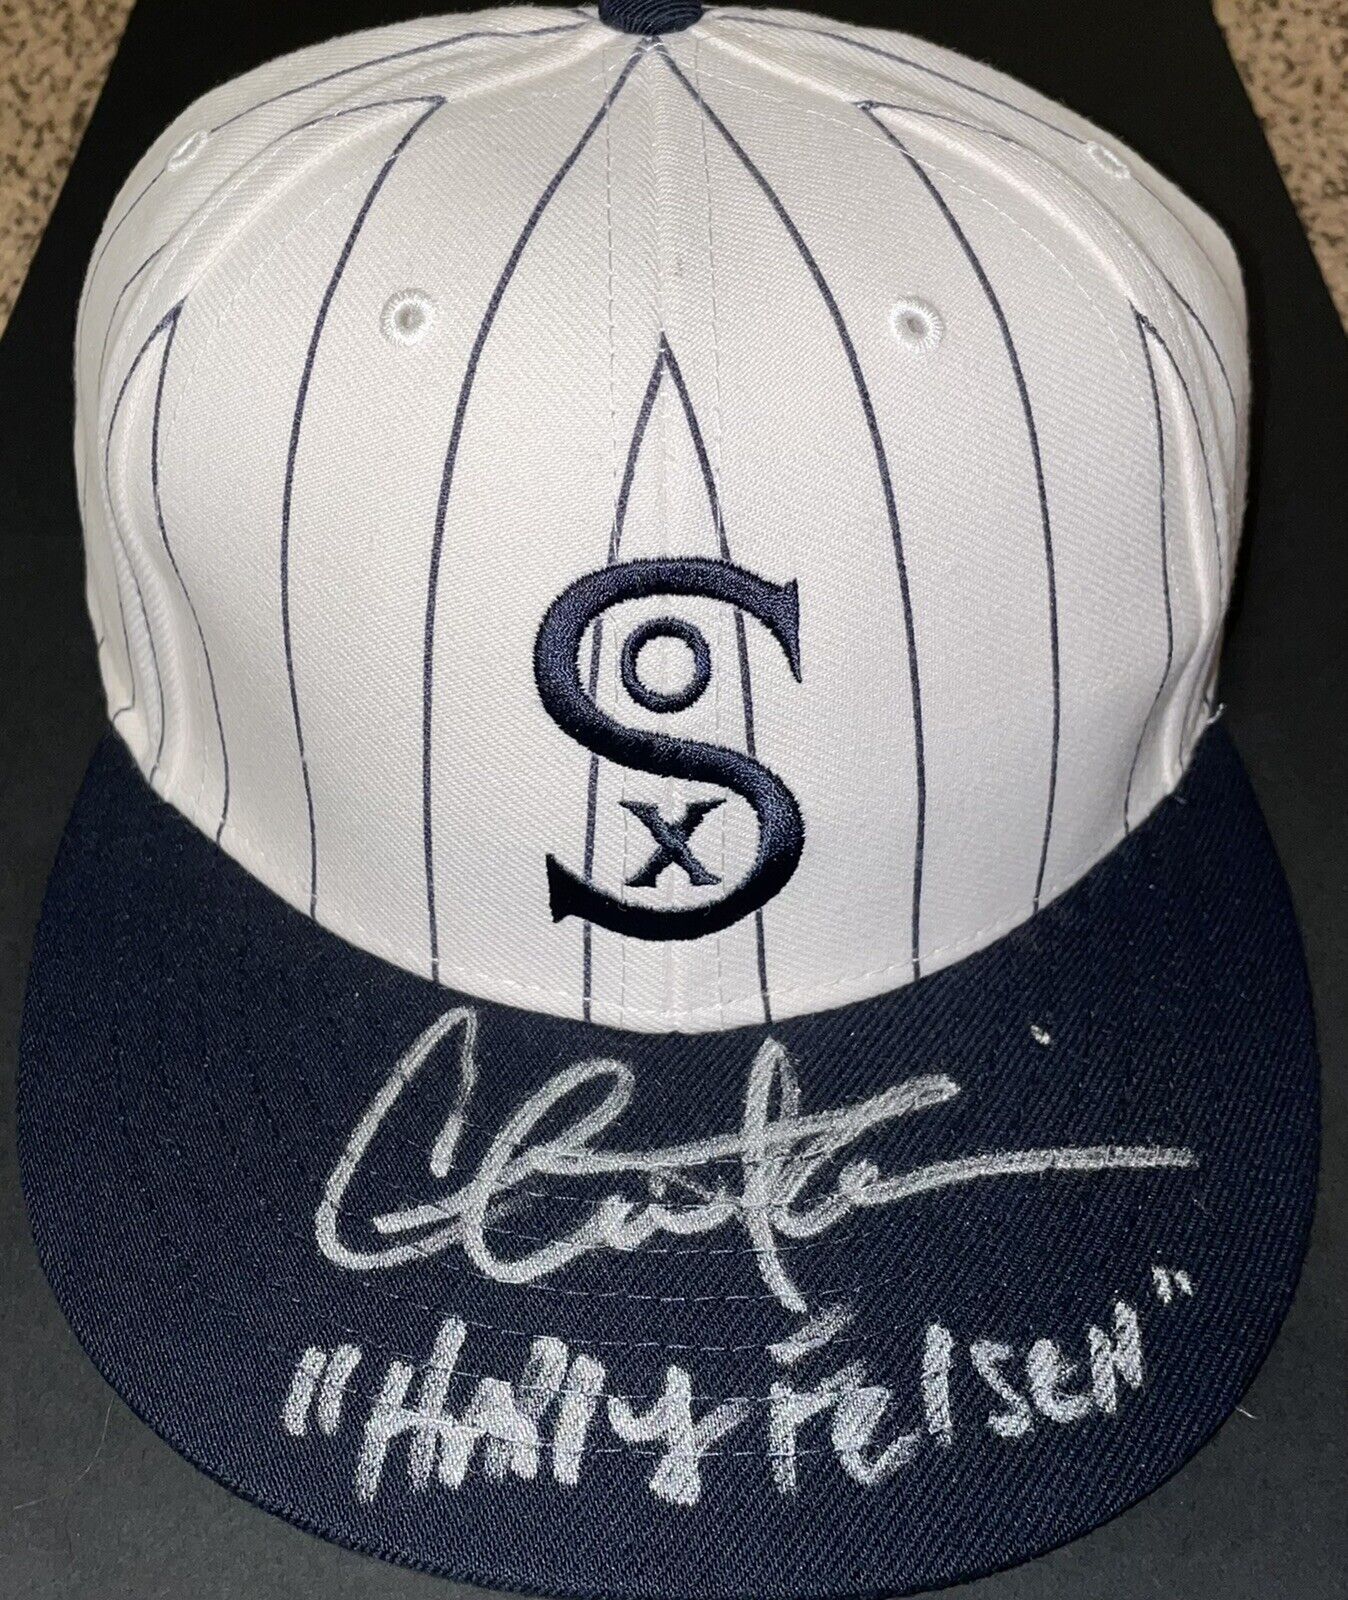 Charlie Sheen Signed Black Sox Hat Swartz Coa